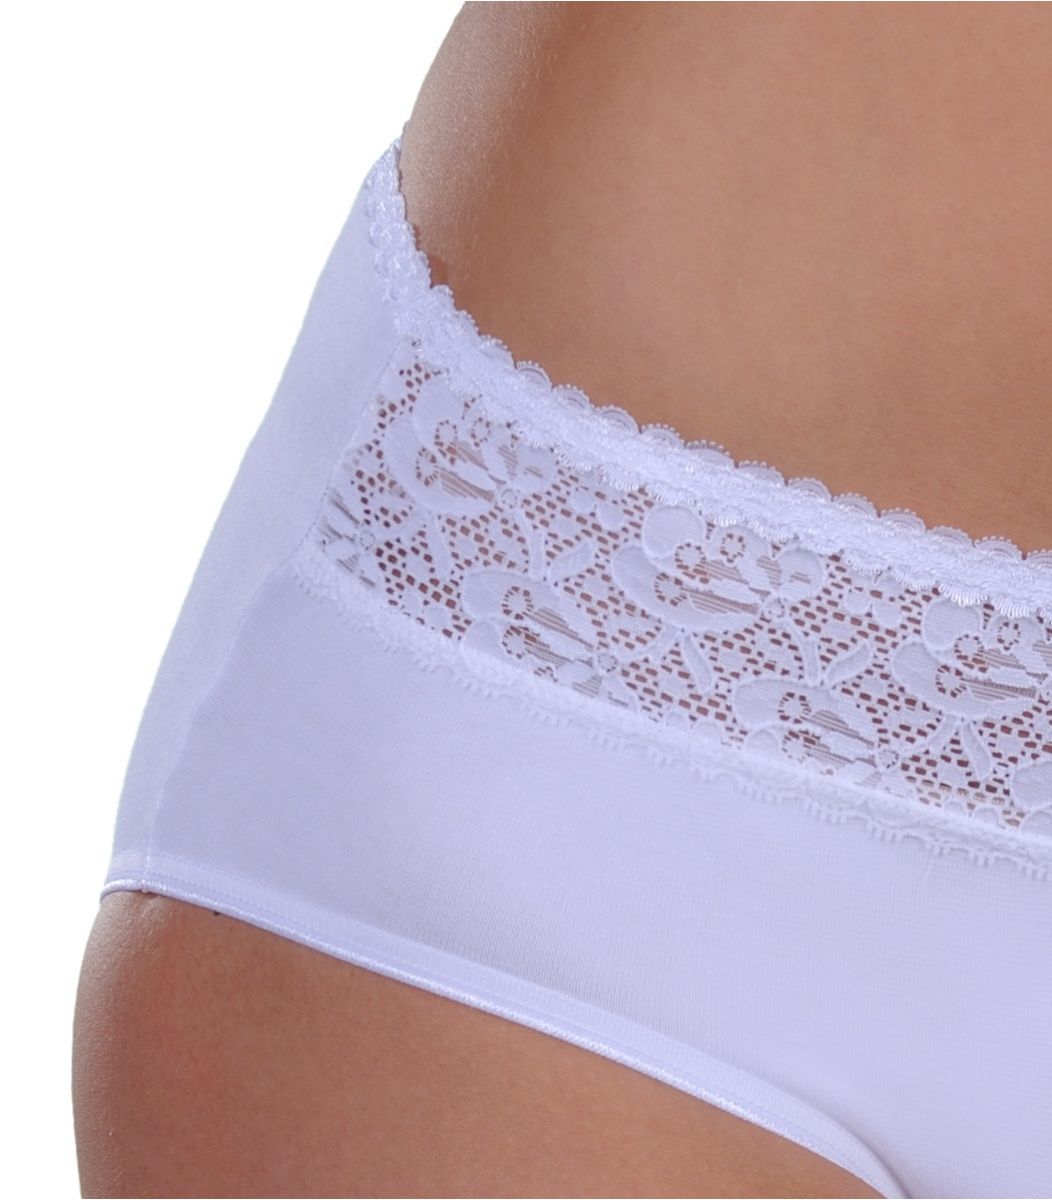 Panty mini, lace strip, White, Small